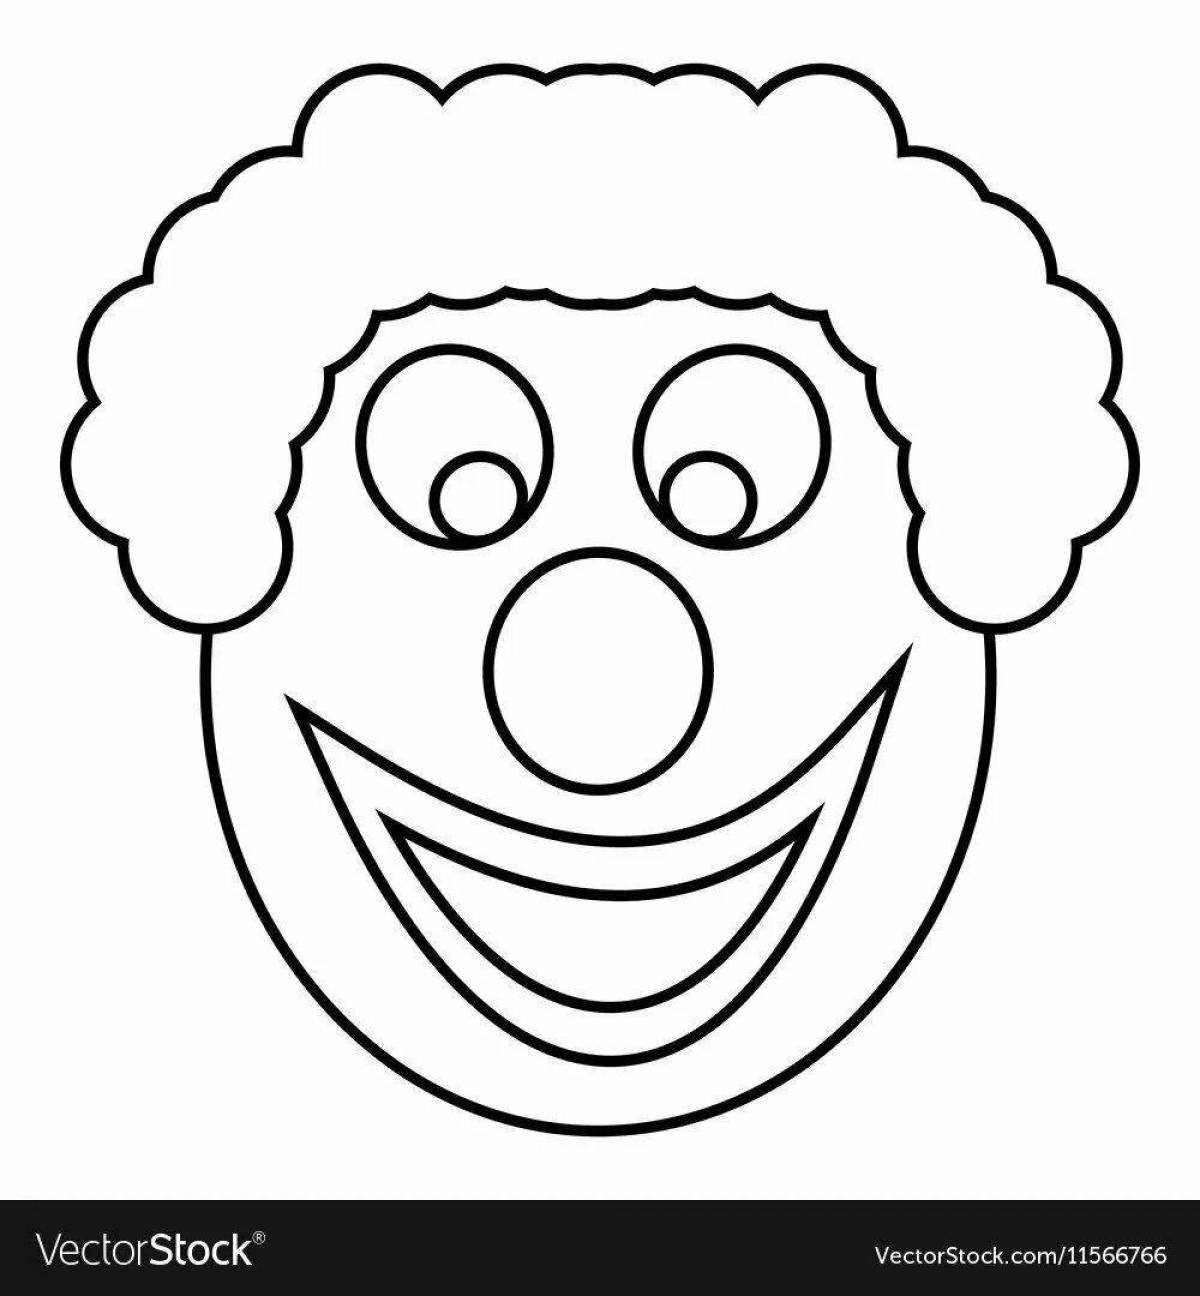 Голова клоуна раскраска. Лицо клоуна для аппликации. Аппликация "клоун". Клоун раскраска для детей. Шаблон рот клоуна